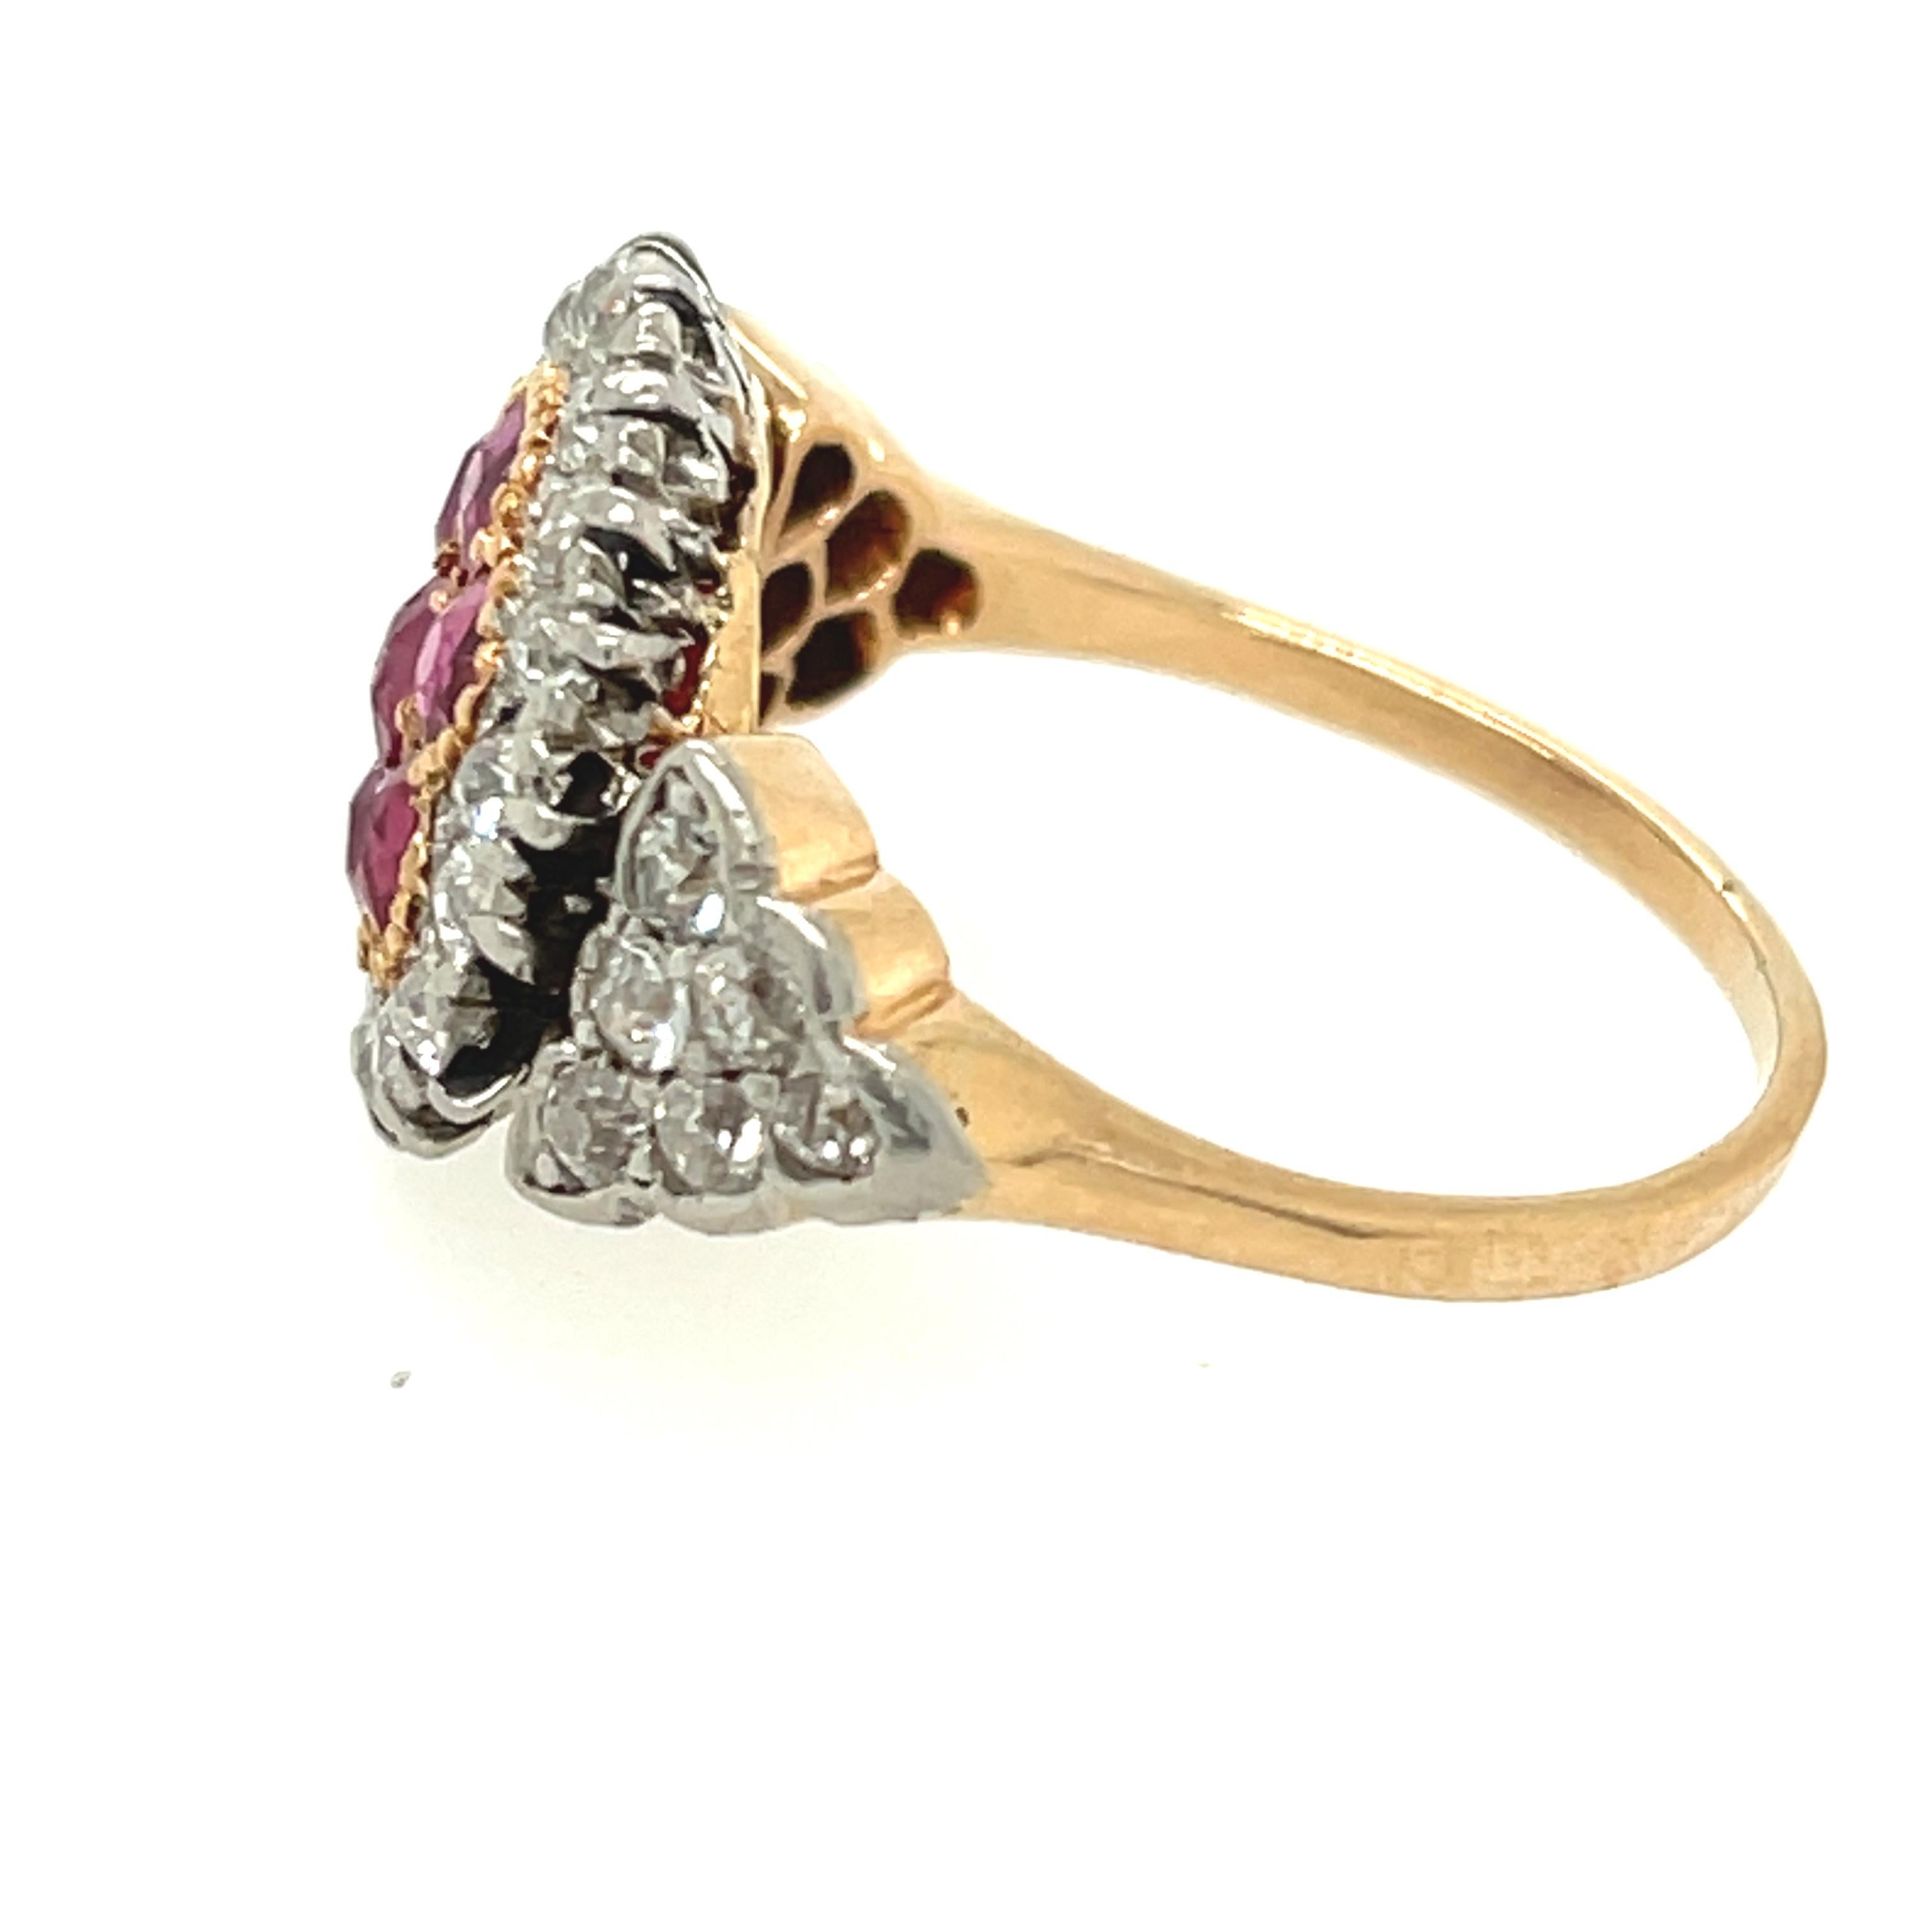 Ein hübscher, antiker Ring aus Platin und Gold mit Rubinen und Diamanten um 1910. Dieser einzigartige Ring ist mit einem zentralen Cluster aus leuchtend roten Rubinen mit einem Gewicht von etwa 0,85 Karat besetzt. In der Fassung um den Cluster und